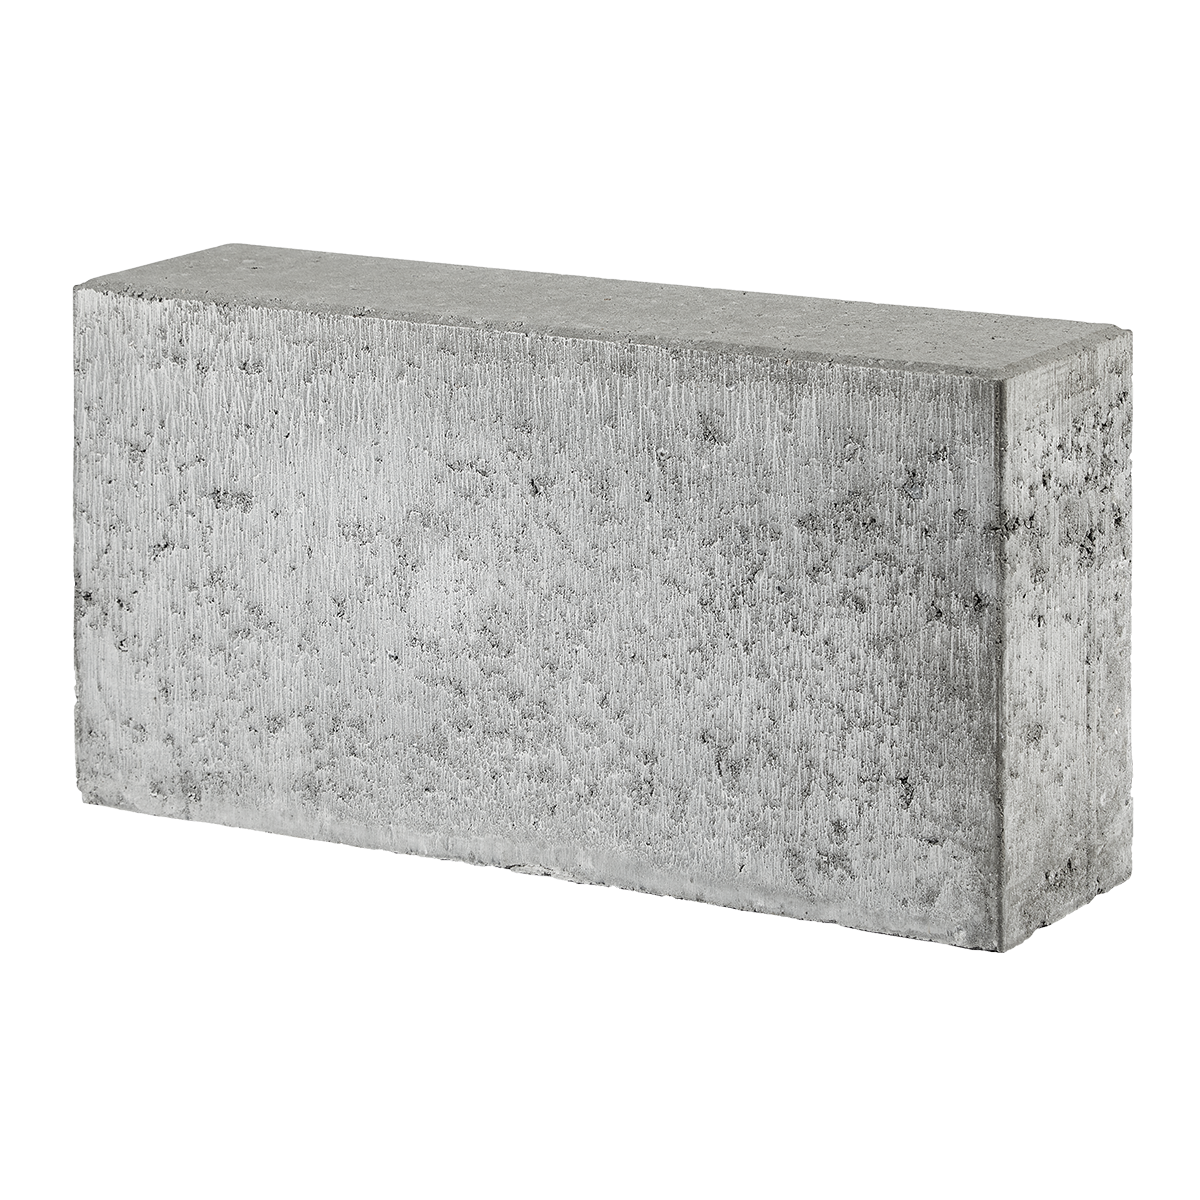 Albertslund-tiefbordrandsteine 15x30x60 cm Grau